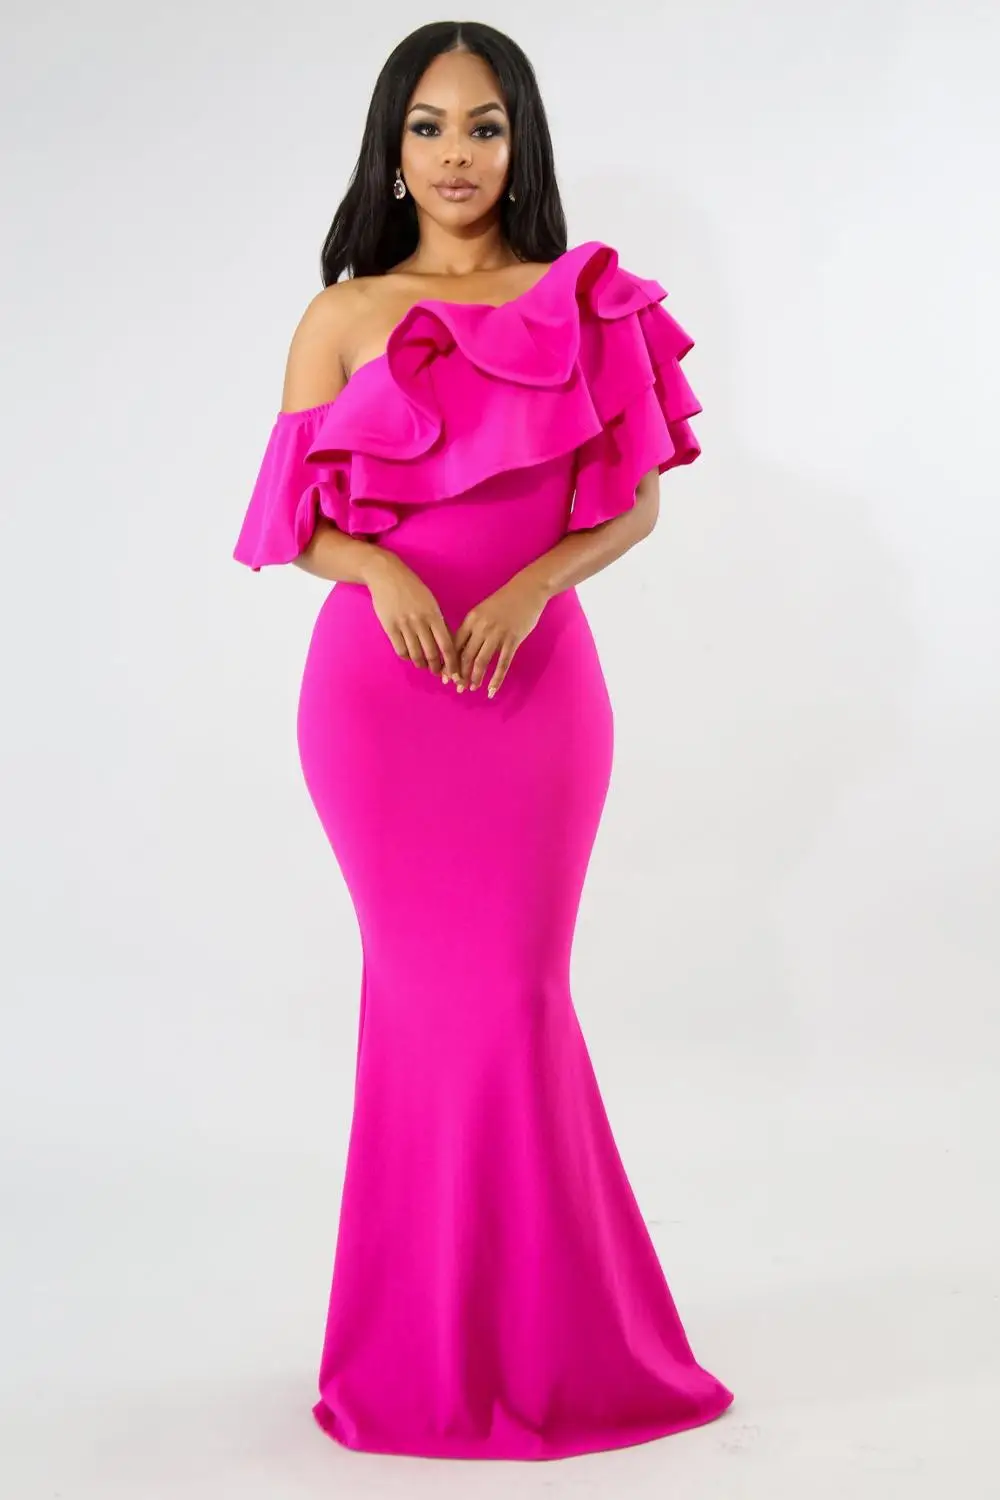 Adogirl для женщин с открытыми плечами рюшами Русалка Вечеринка платья элегантный сексуальный Slash шеи Bodycon Тонкий Макси платье Твердые наряды - Цвет: rosy party dress